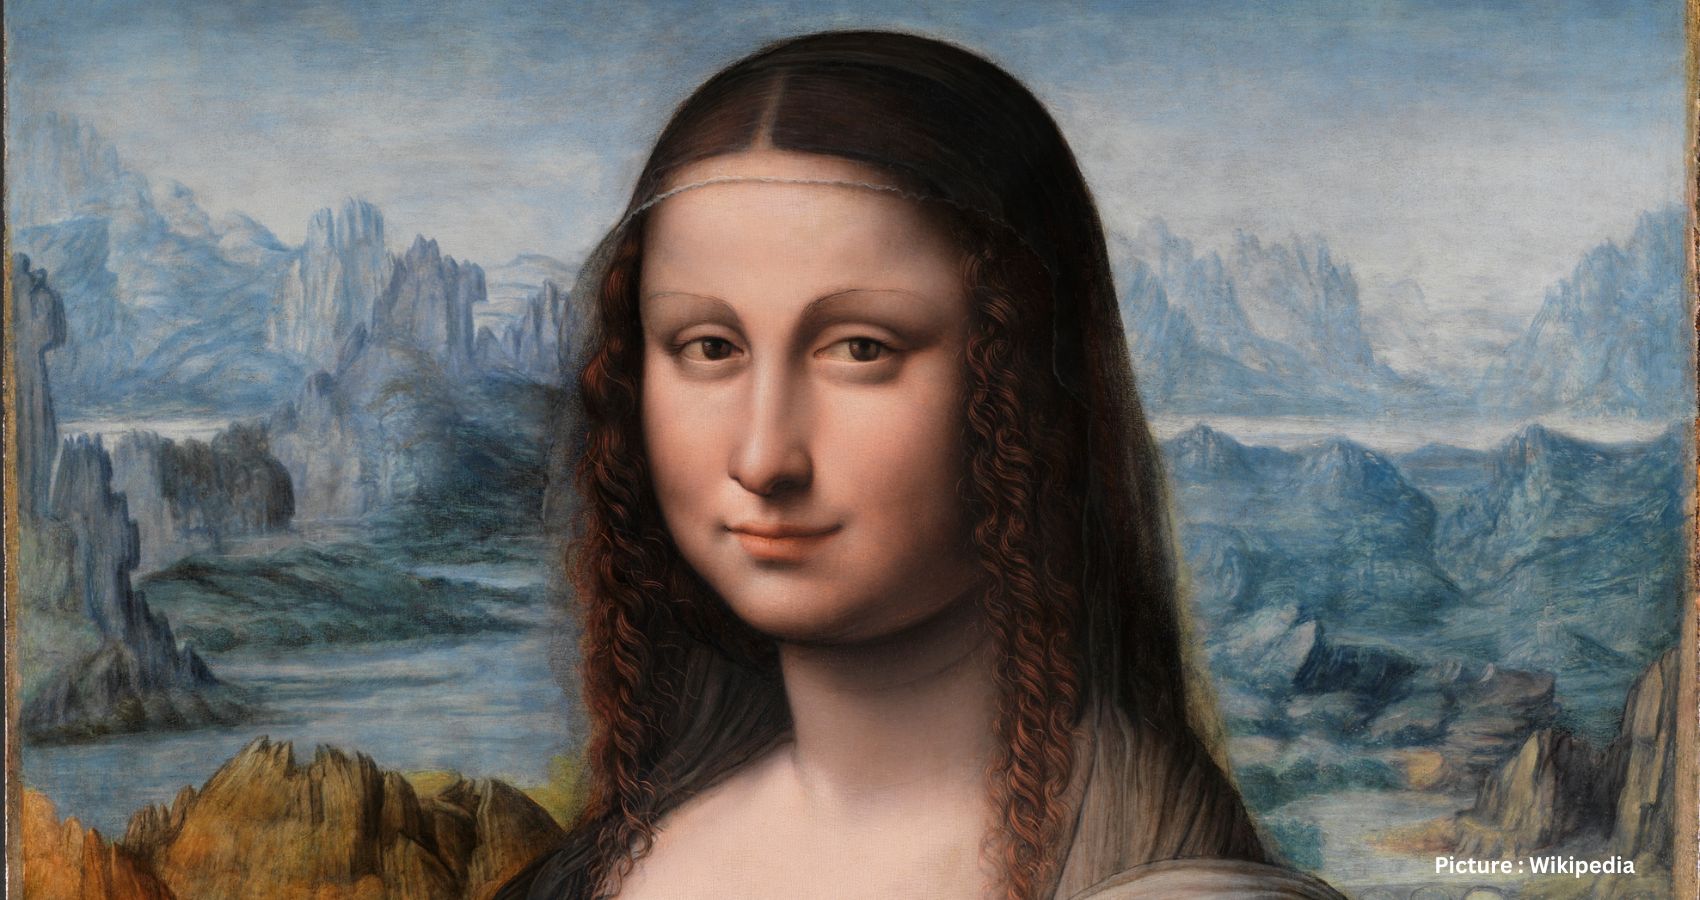 Featured & Cover Geologist Uncovers Possible Location of Leonardo da Vinci's Mona Lisa in Lake Como's Lecco